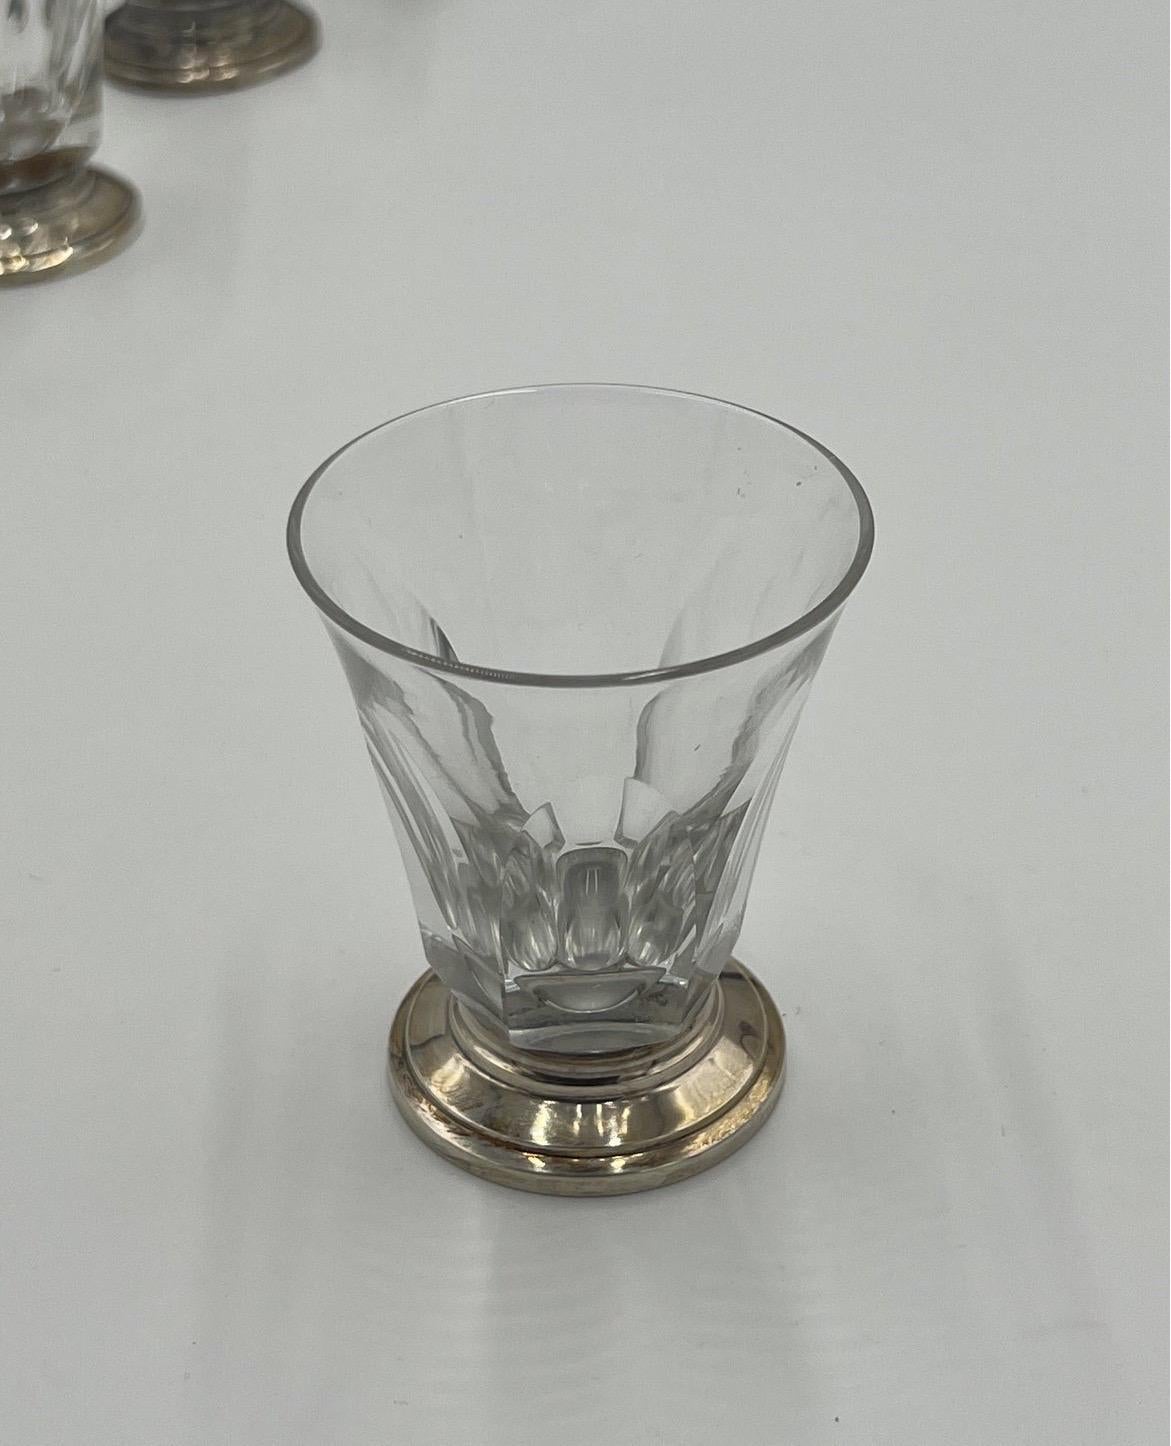 Satz von 10 Wodka- oder Cocktailgläsern aus E Caldwell-Sterlingsilber und Kristall mit Fassungen aus 950. Vollständig französisch gepunzt. Ausgezeichnete Brille ohne Beschädigung! Maße: 3